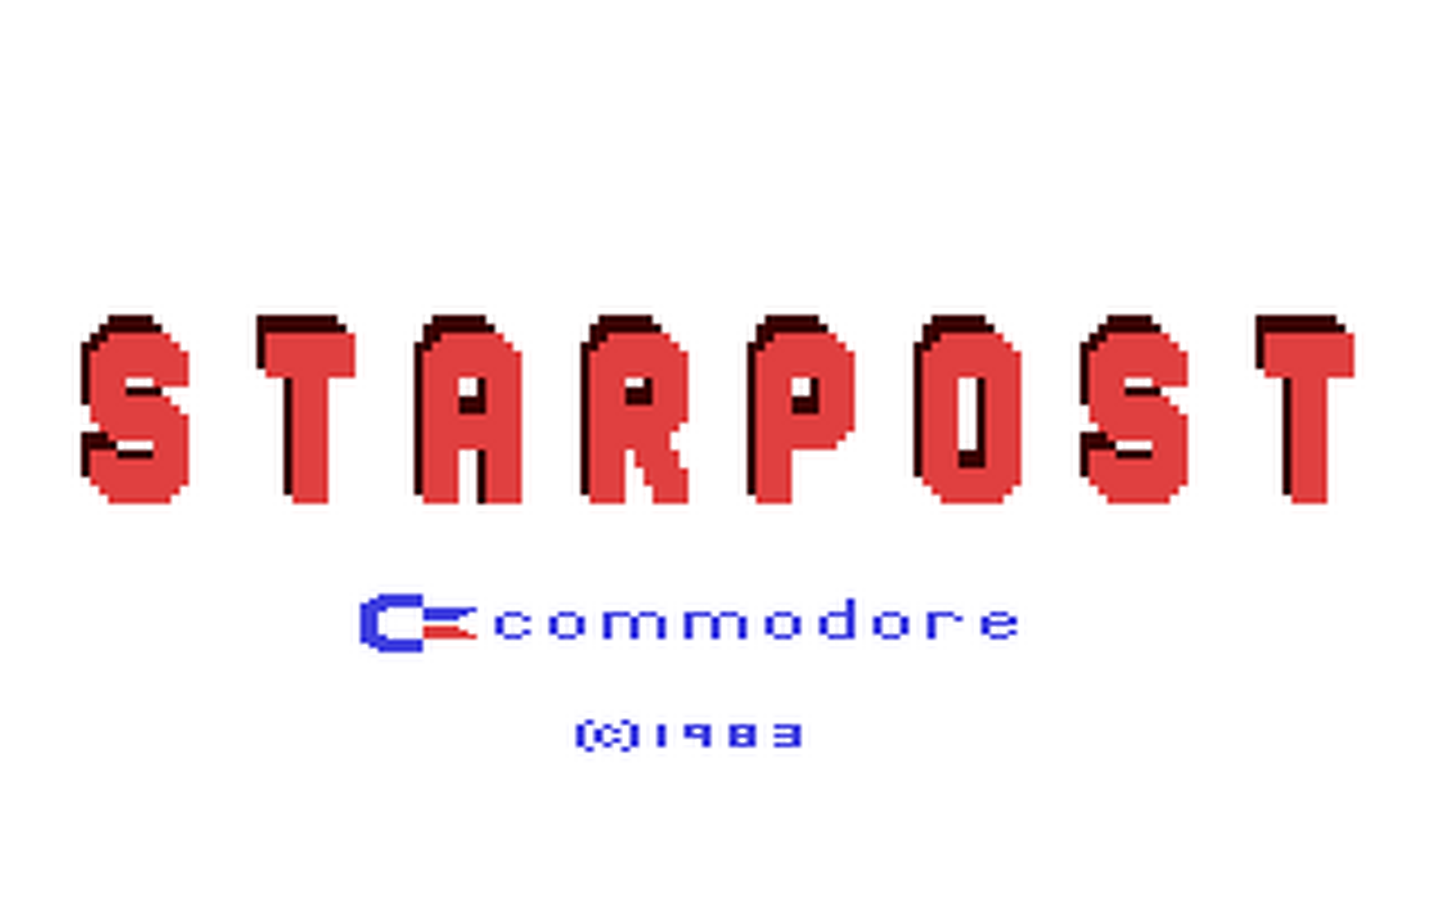 C64 GameBase Star_Post Commodore 1983